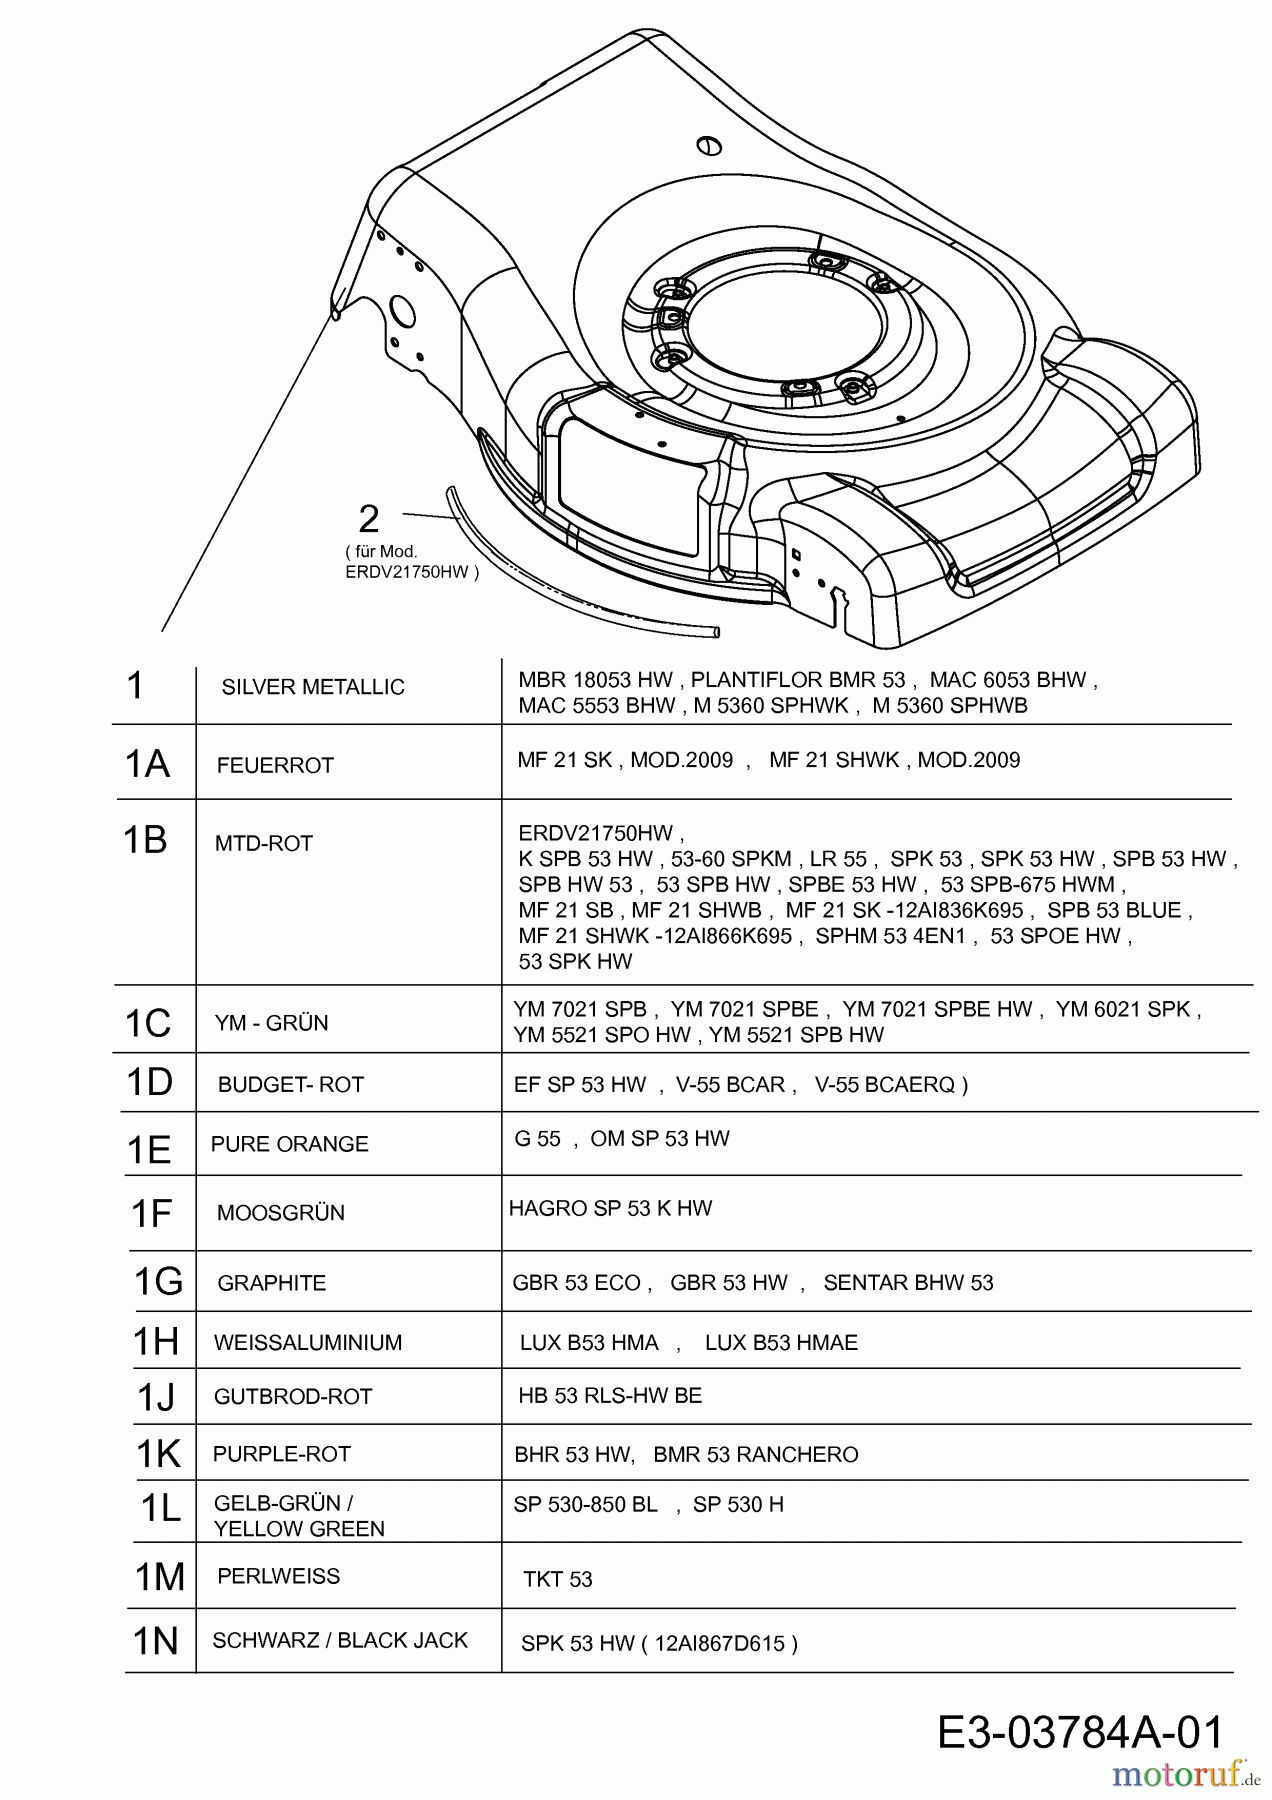  MTD Tondeuse thermique tractée SPHM 53 4 en 1 12C-83CQ600  (2010) Carter plateau de coupe